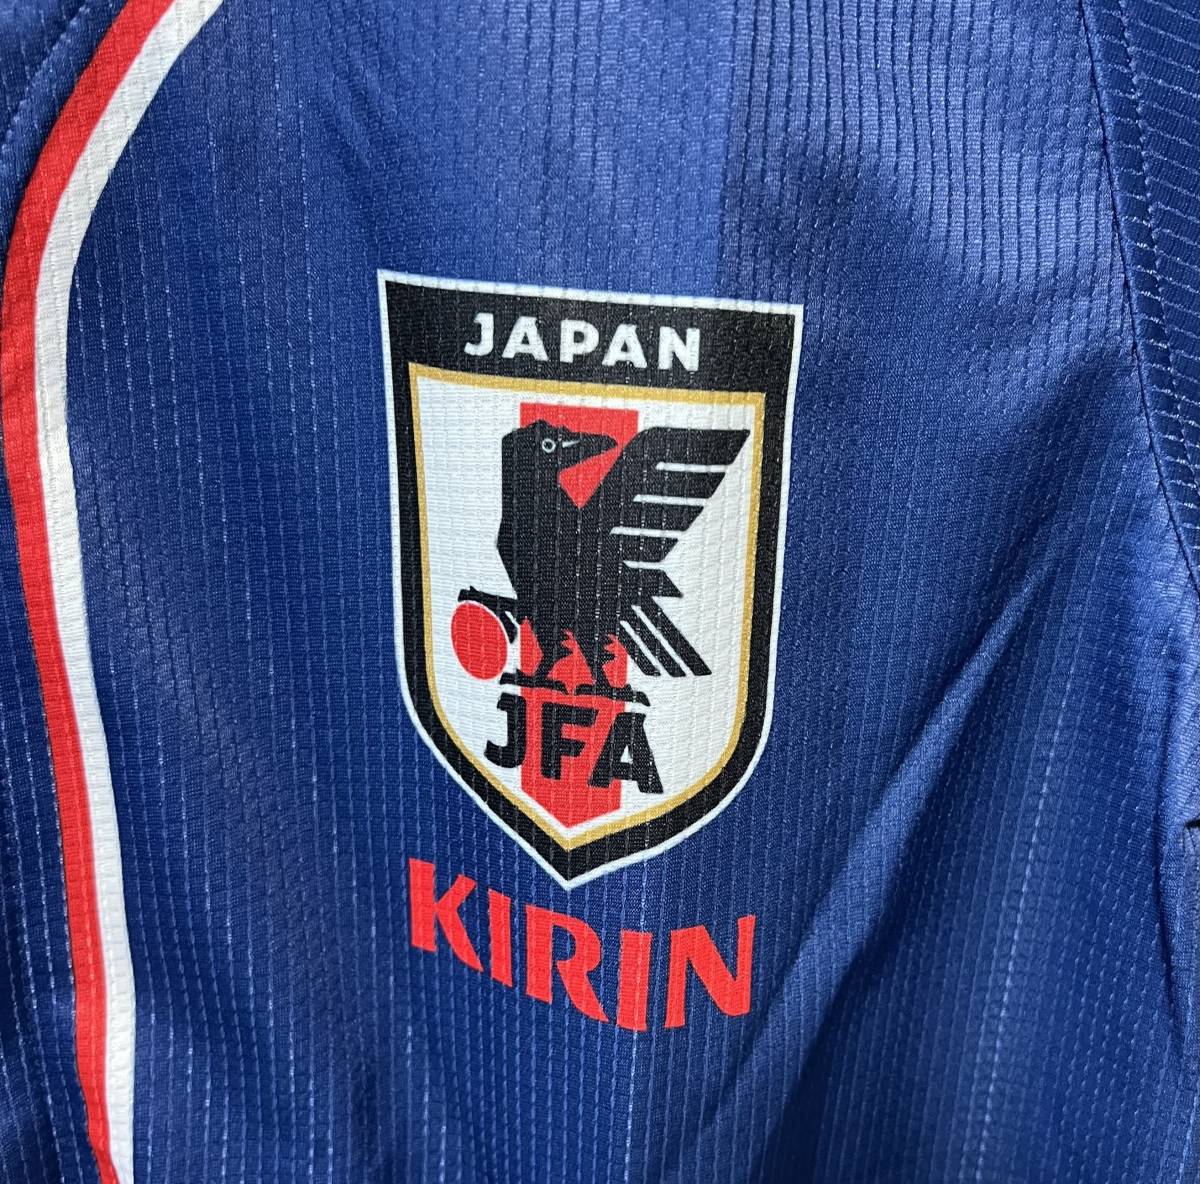 新品同様 KIRIN キリンチャレンジカップ キリチャレの日 日本代表 ベースボールシャツ ユニフォーム サイズL_画像4